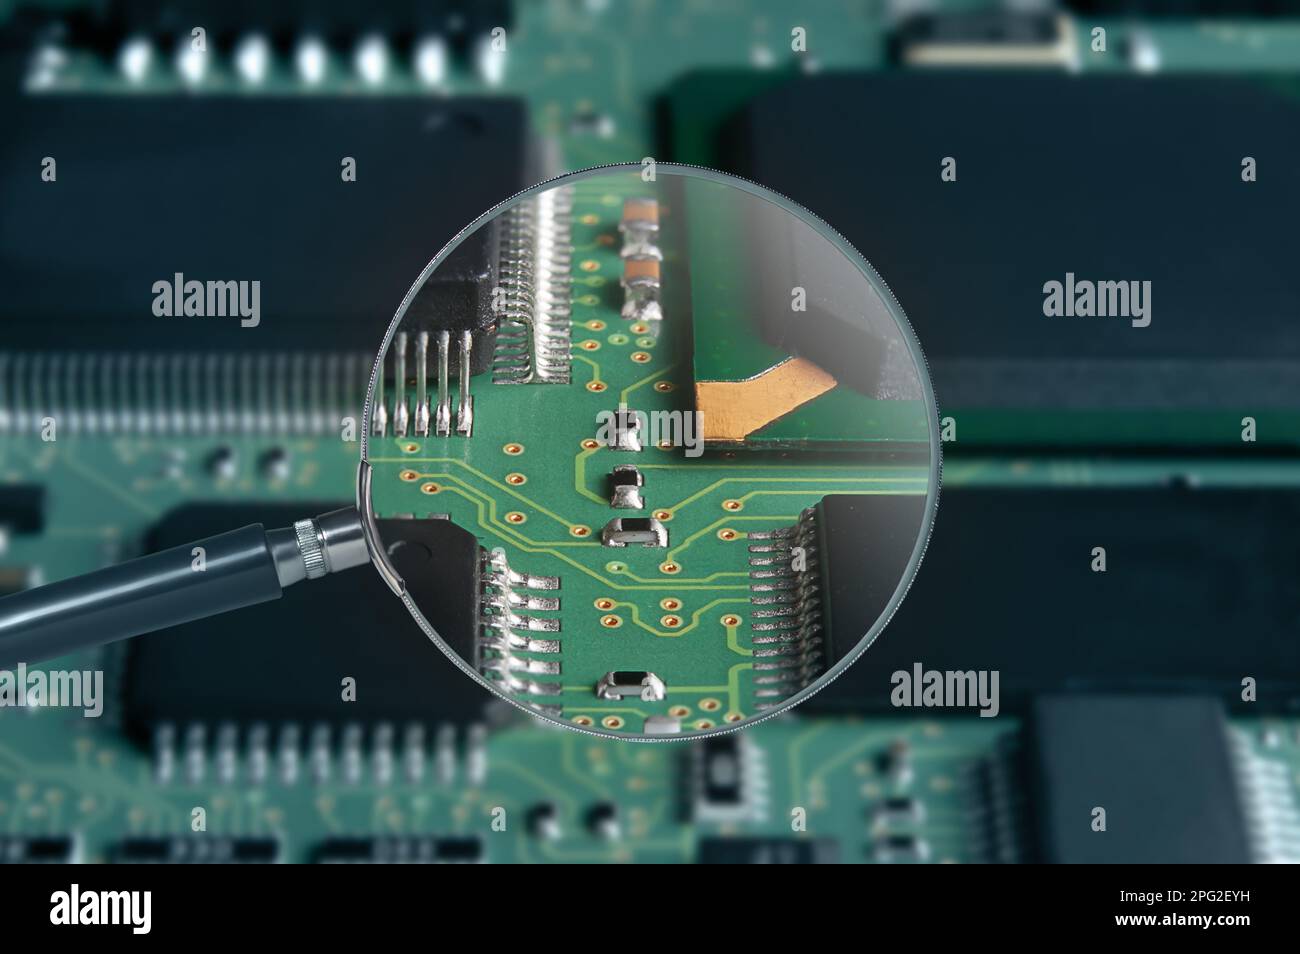 vue de la carte de circuit imprimé avec les composants actifs et passifs montés en surface à travers la loupe Banque D'Images